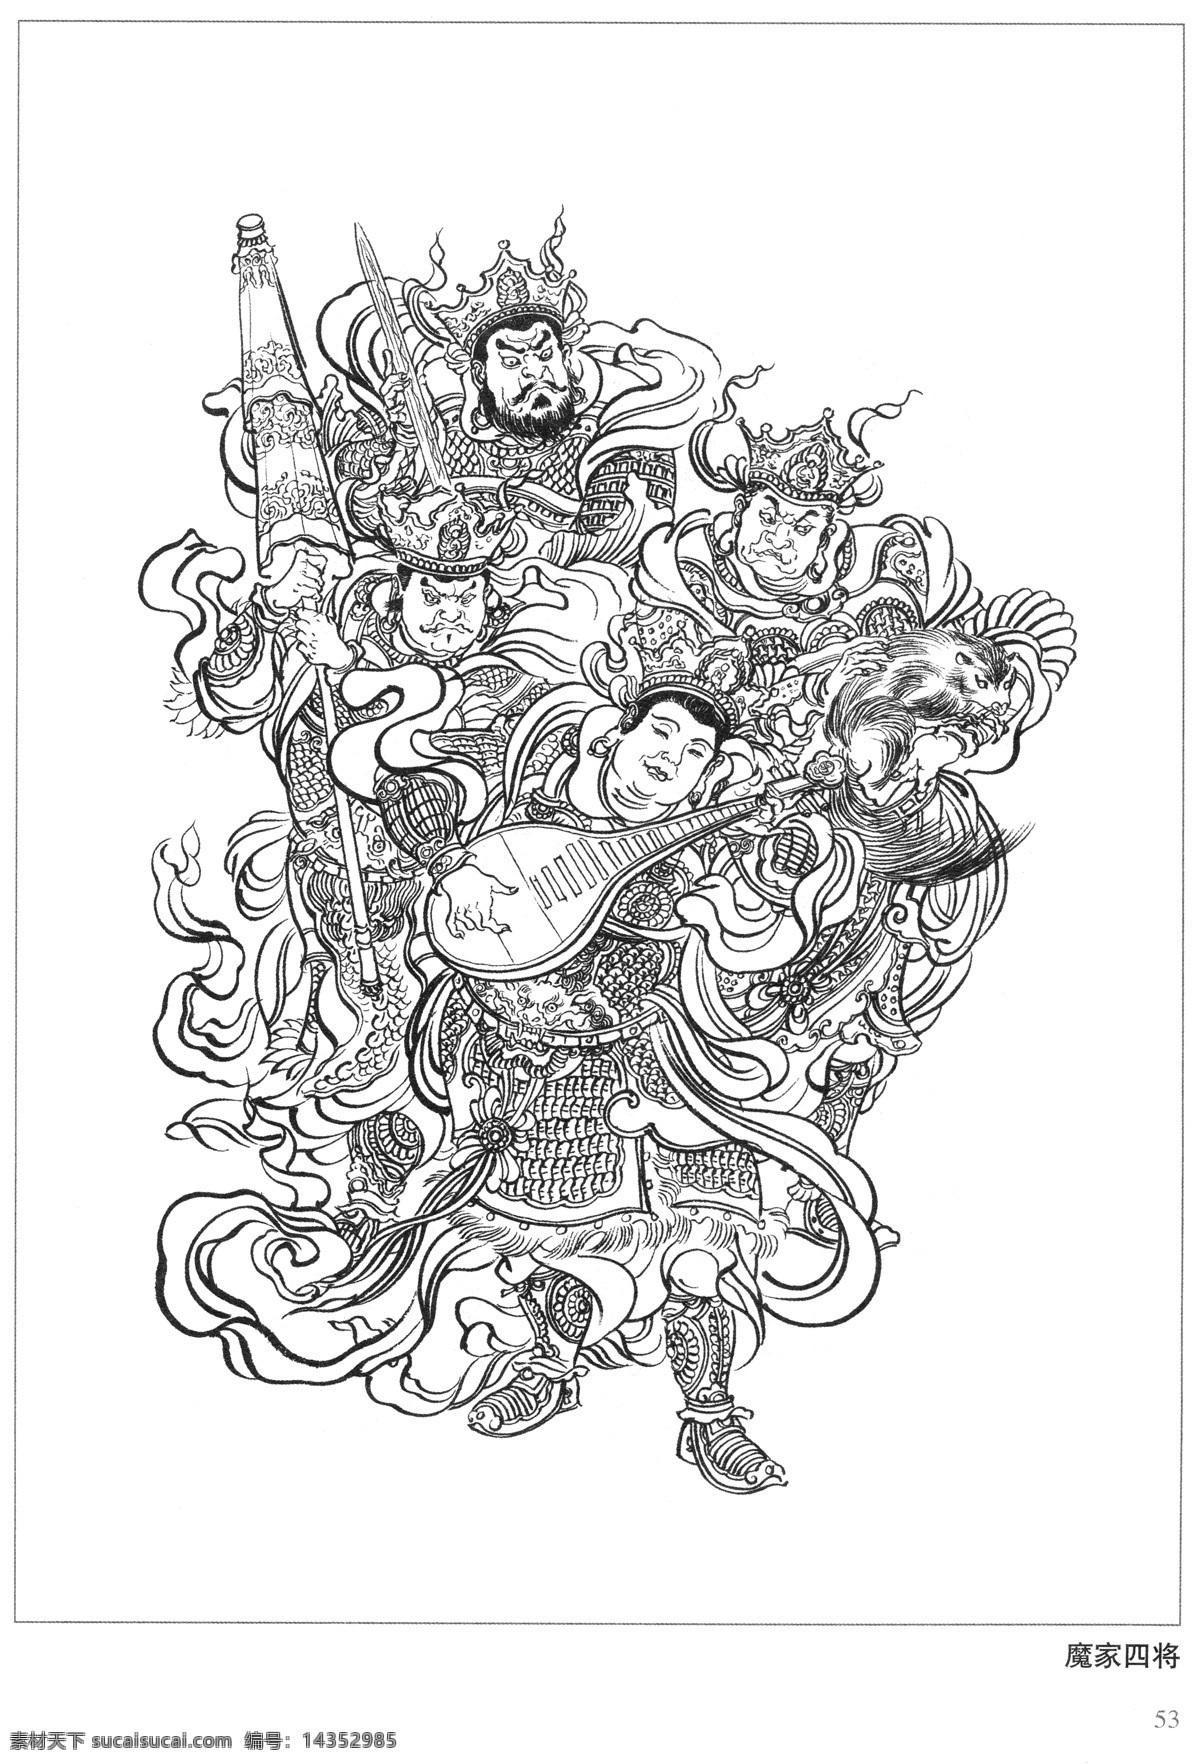 魔家四将 四大天王 封神演义 古代 神仙 白描 人物 图 文化艺术 传统文化